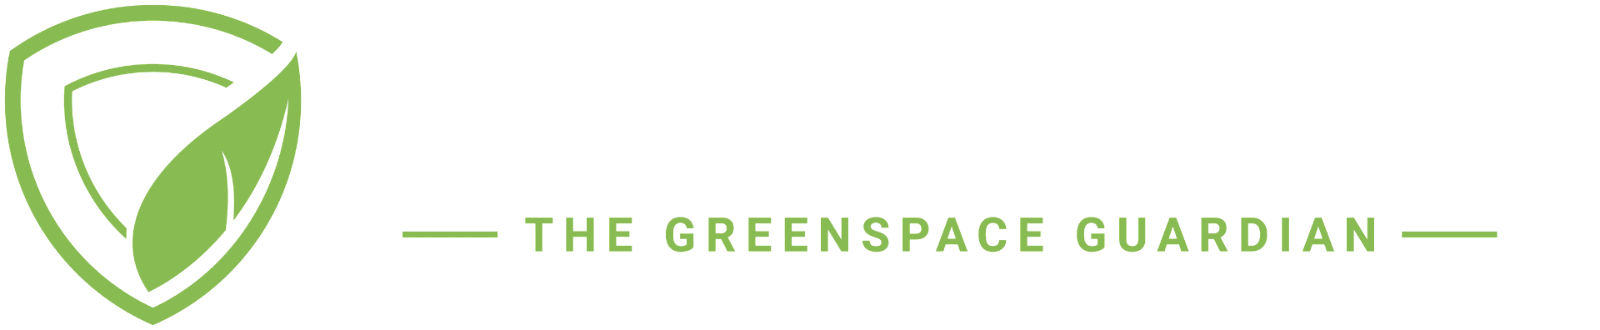 Plant Sentry